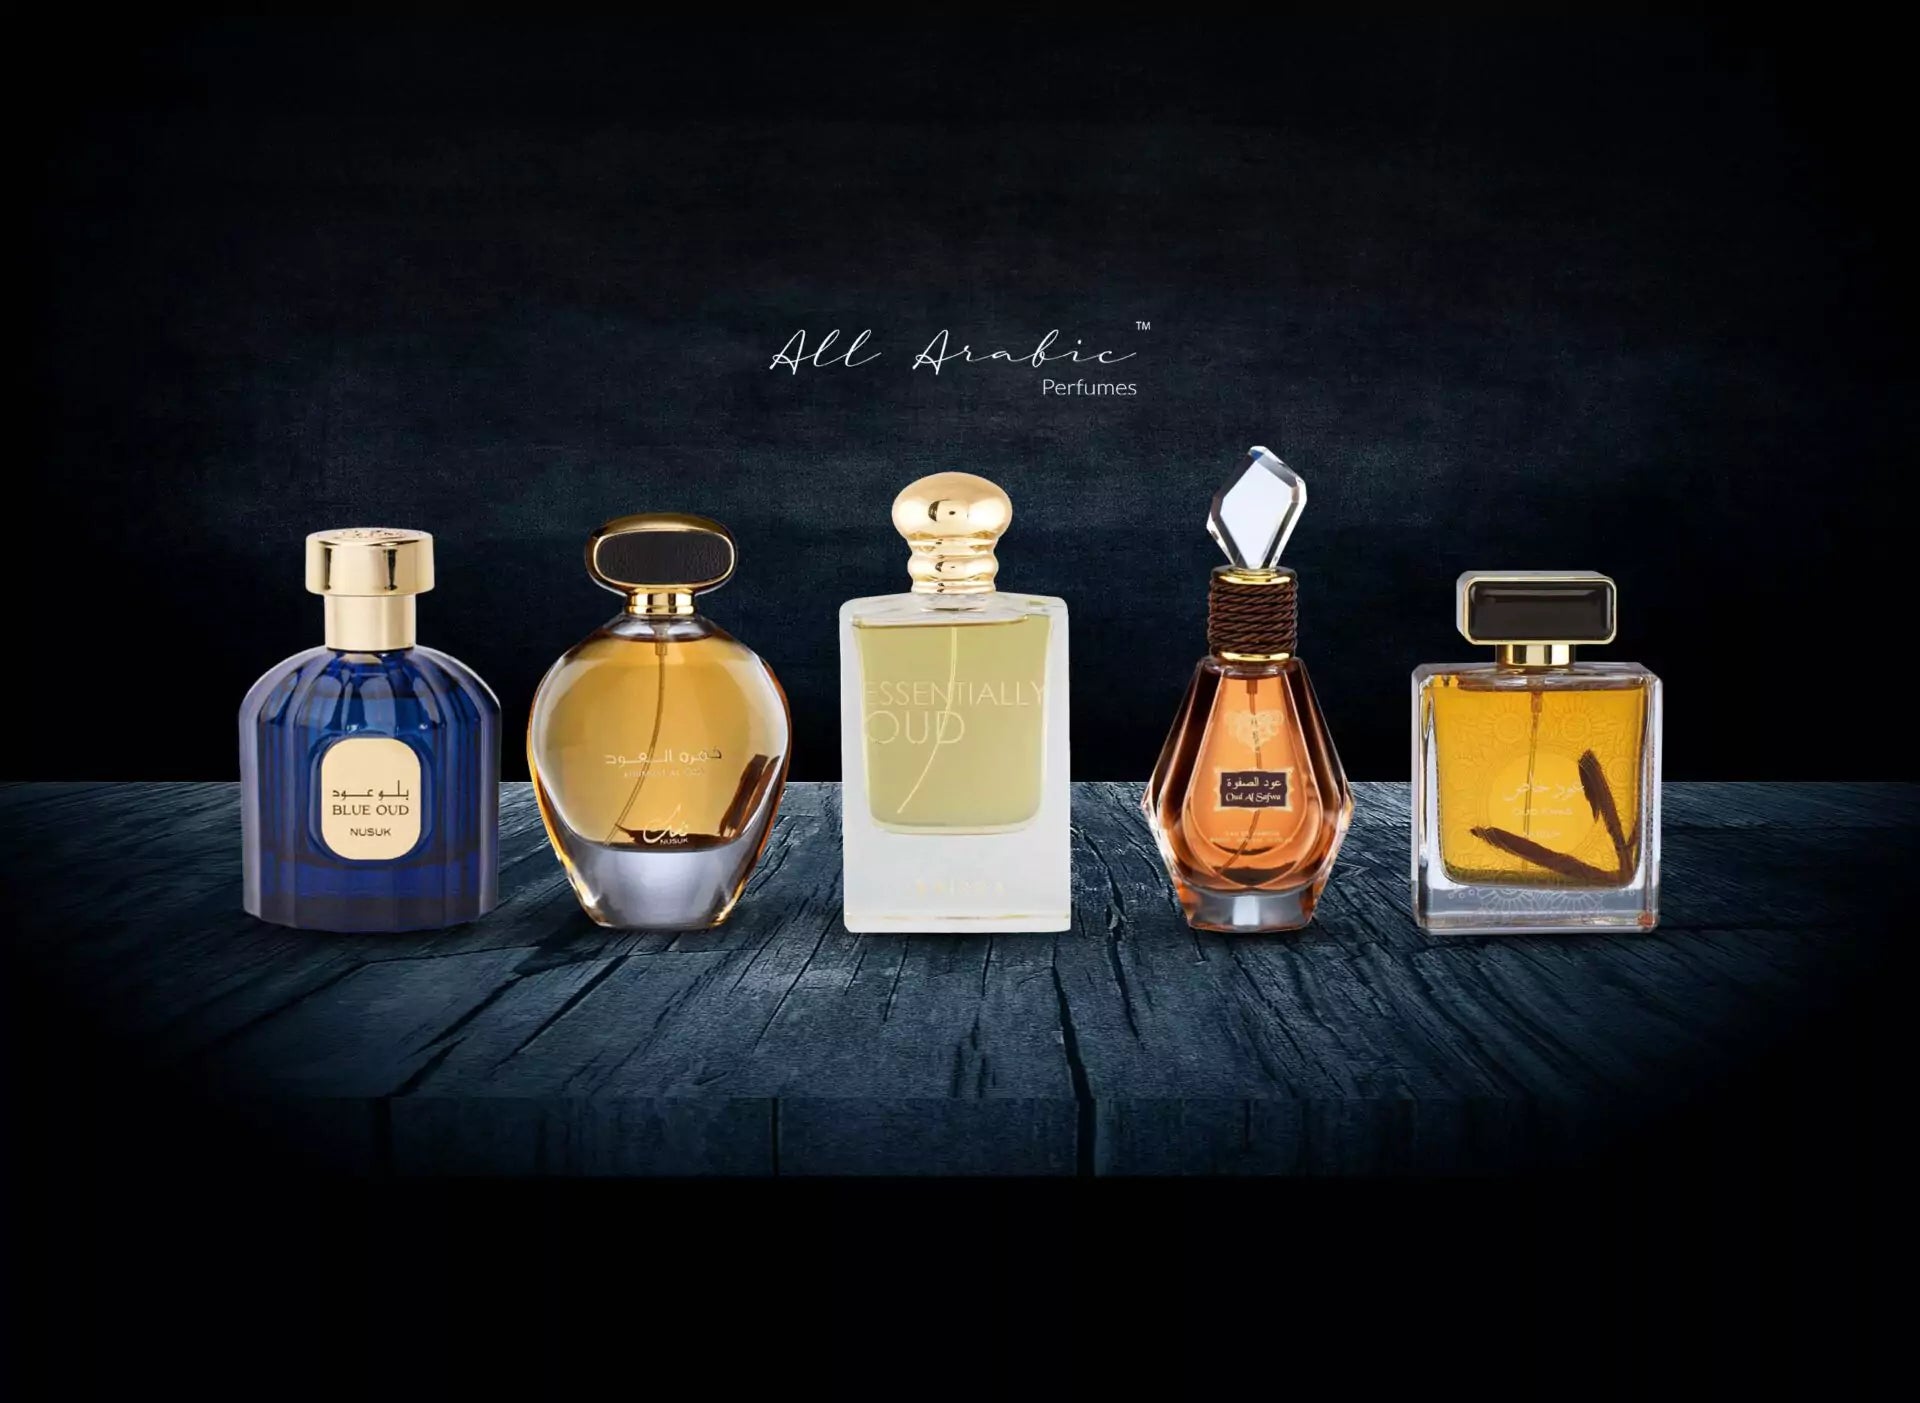 Get The Best Arabian Oud Oil Perfume